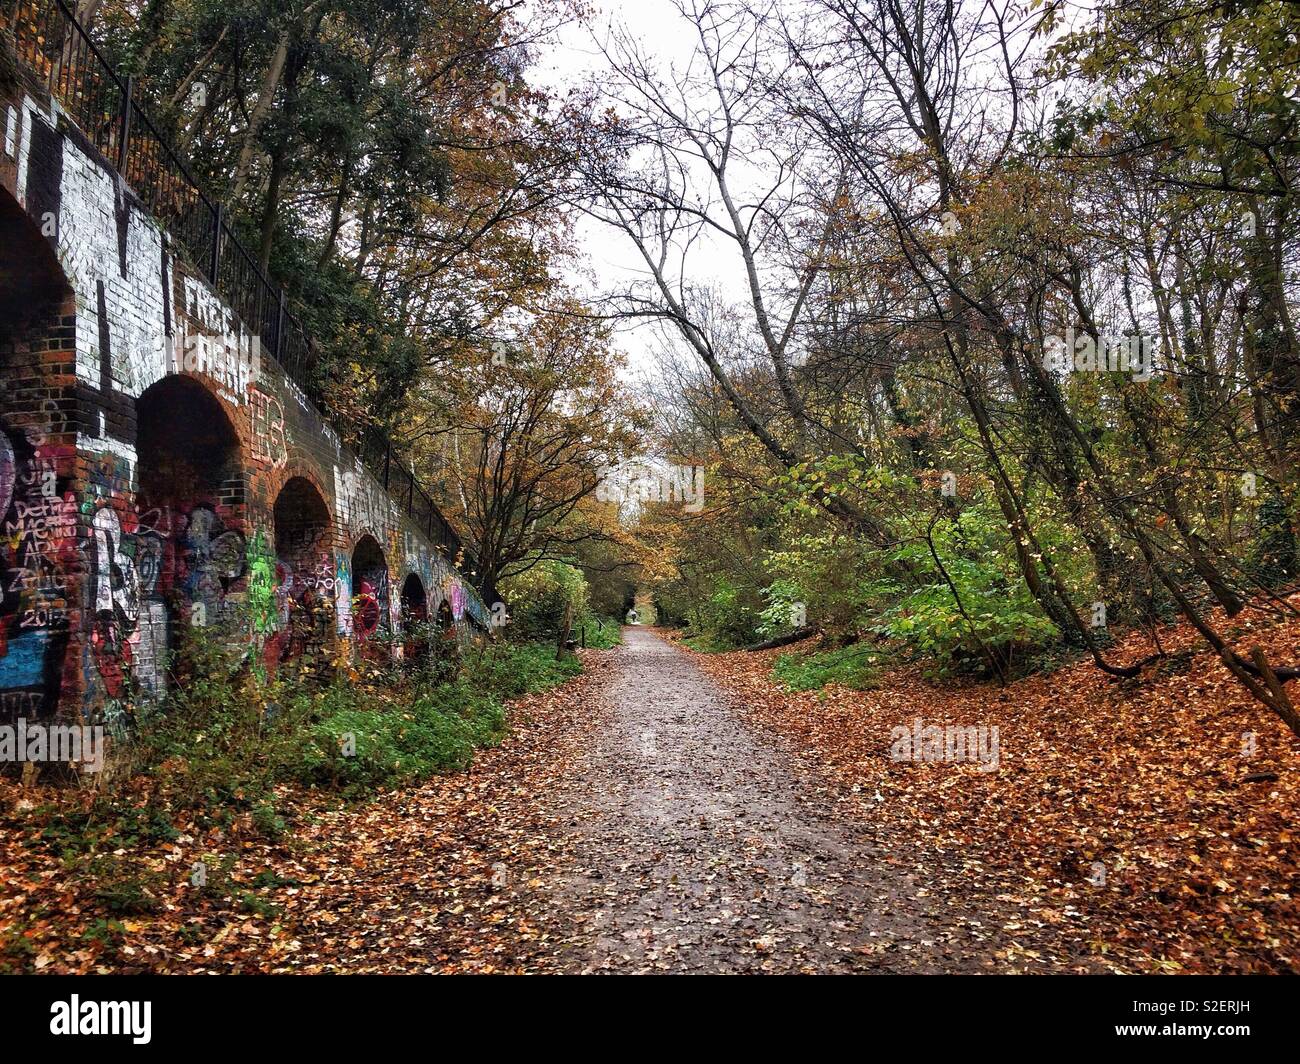 Parklandschaft im Norden Londons - ein Weg und Naturschutzgebiet entlang der Route eines stillgelegten Bahnstrecke. Übersicht Farben des Herbstes, jemand mit einem Regenschirm in der Ferne am Ende des Weges. Stockfoto